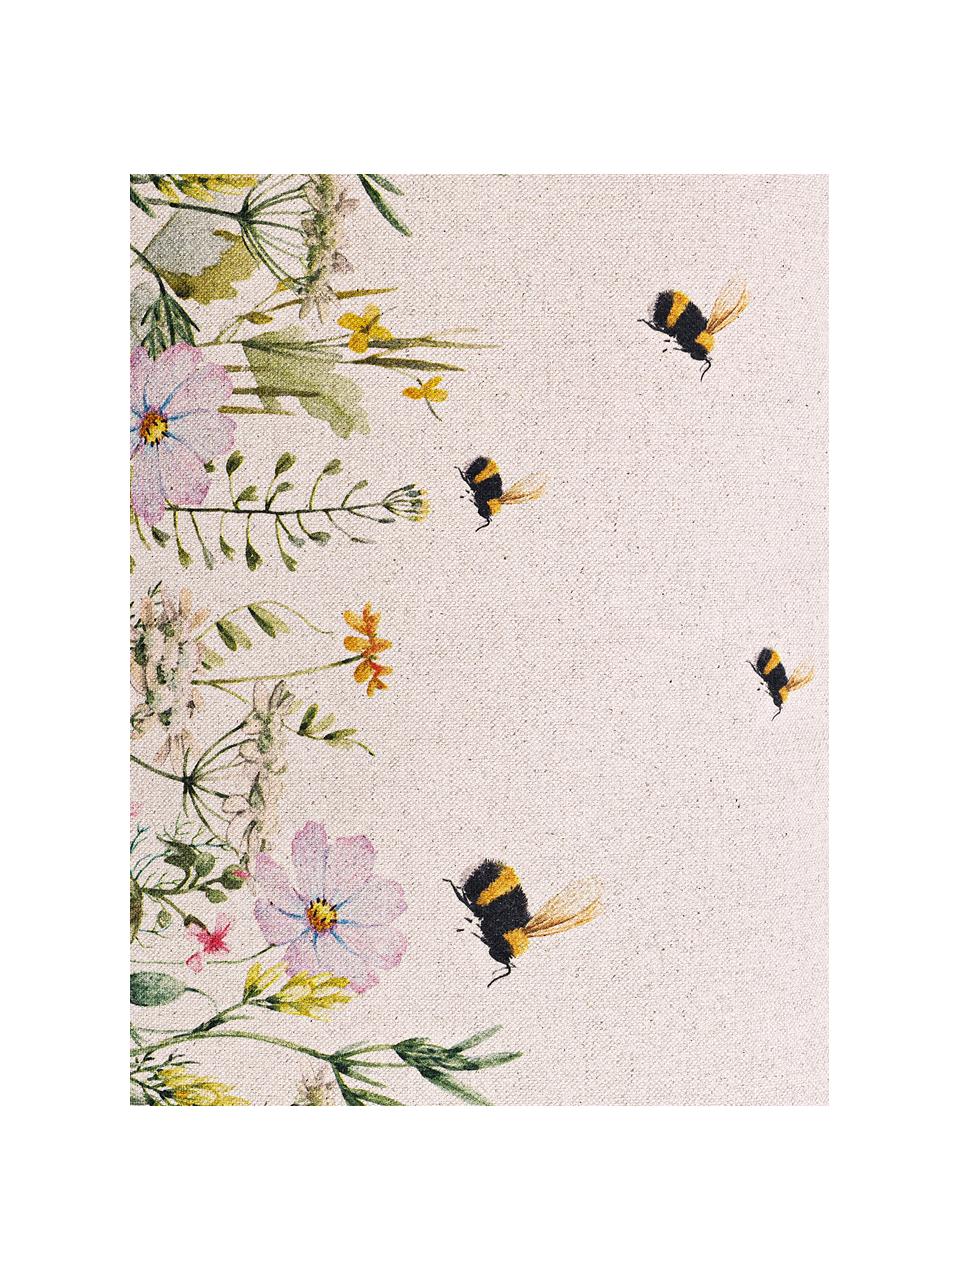 Wendekissenhülle Biene mit Blumenmotiv, 85% Baumwolle, 15% Leinen, Beige, Mehrfarbig, B 30 x L 50 cm